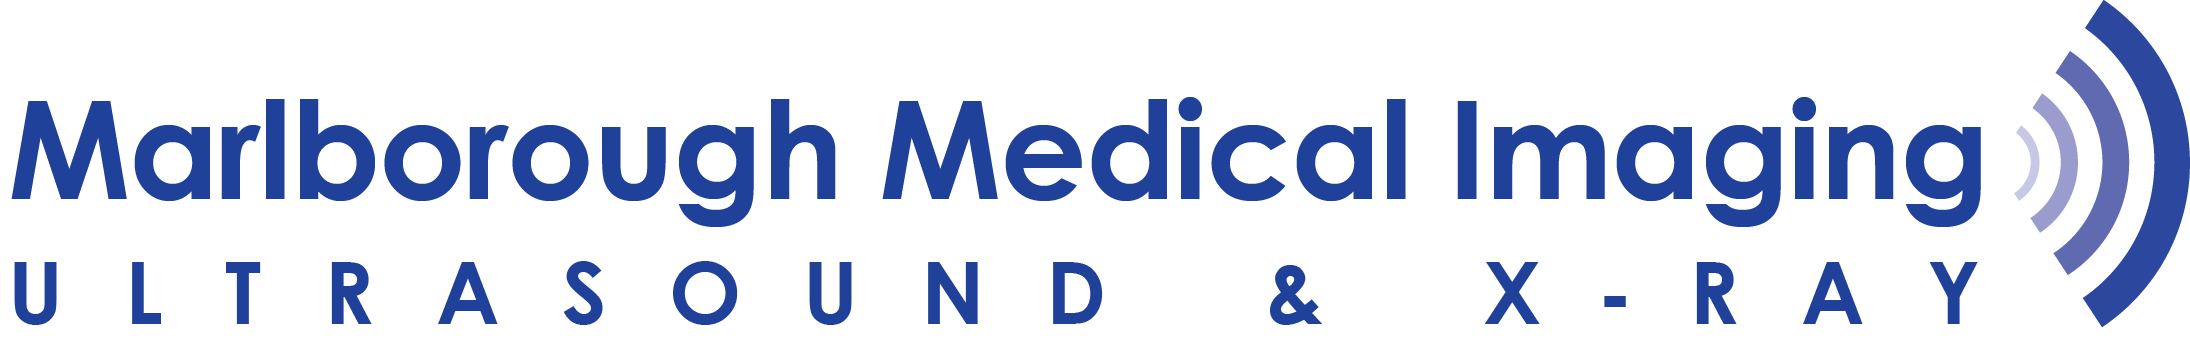 Marlborough Medical Imaging logo